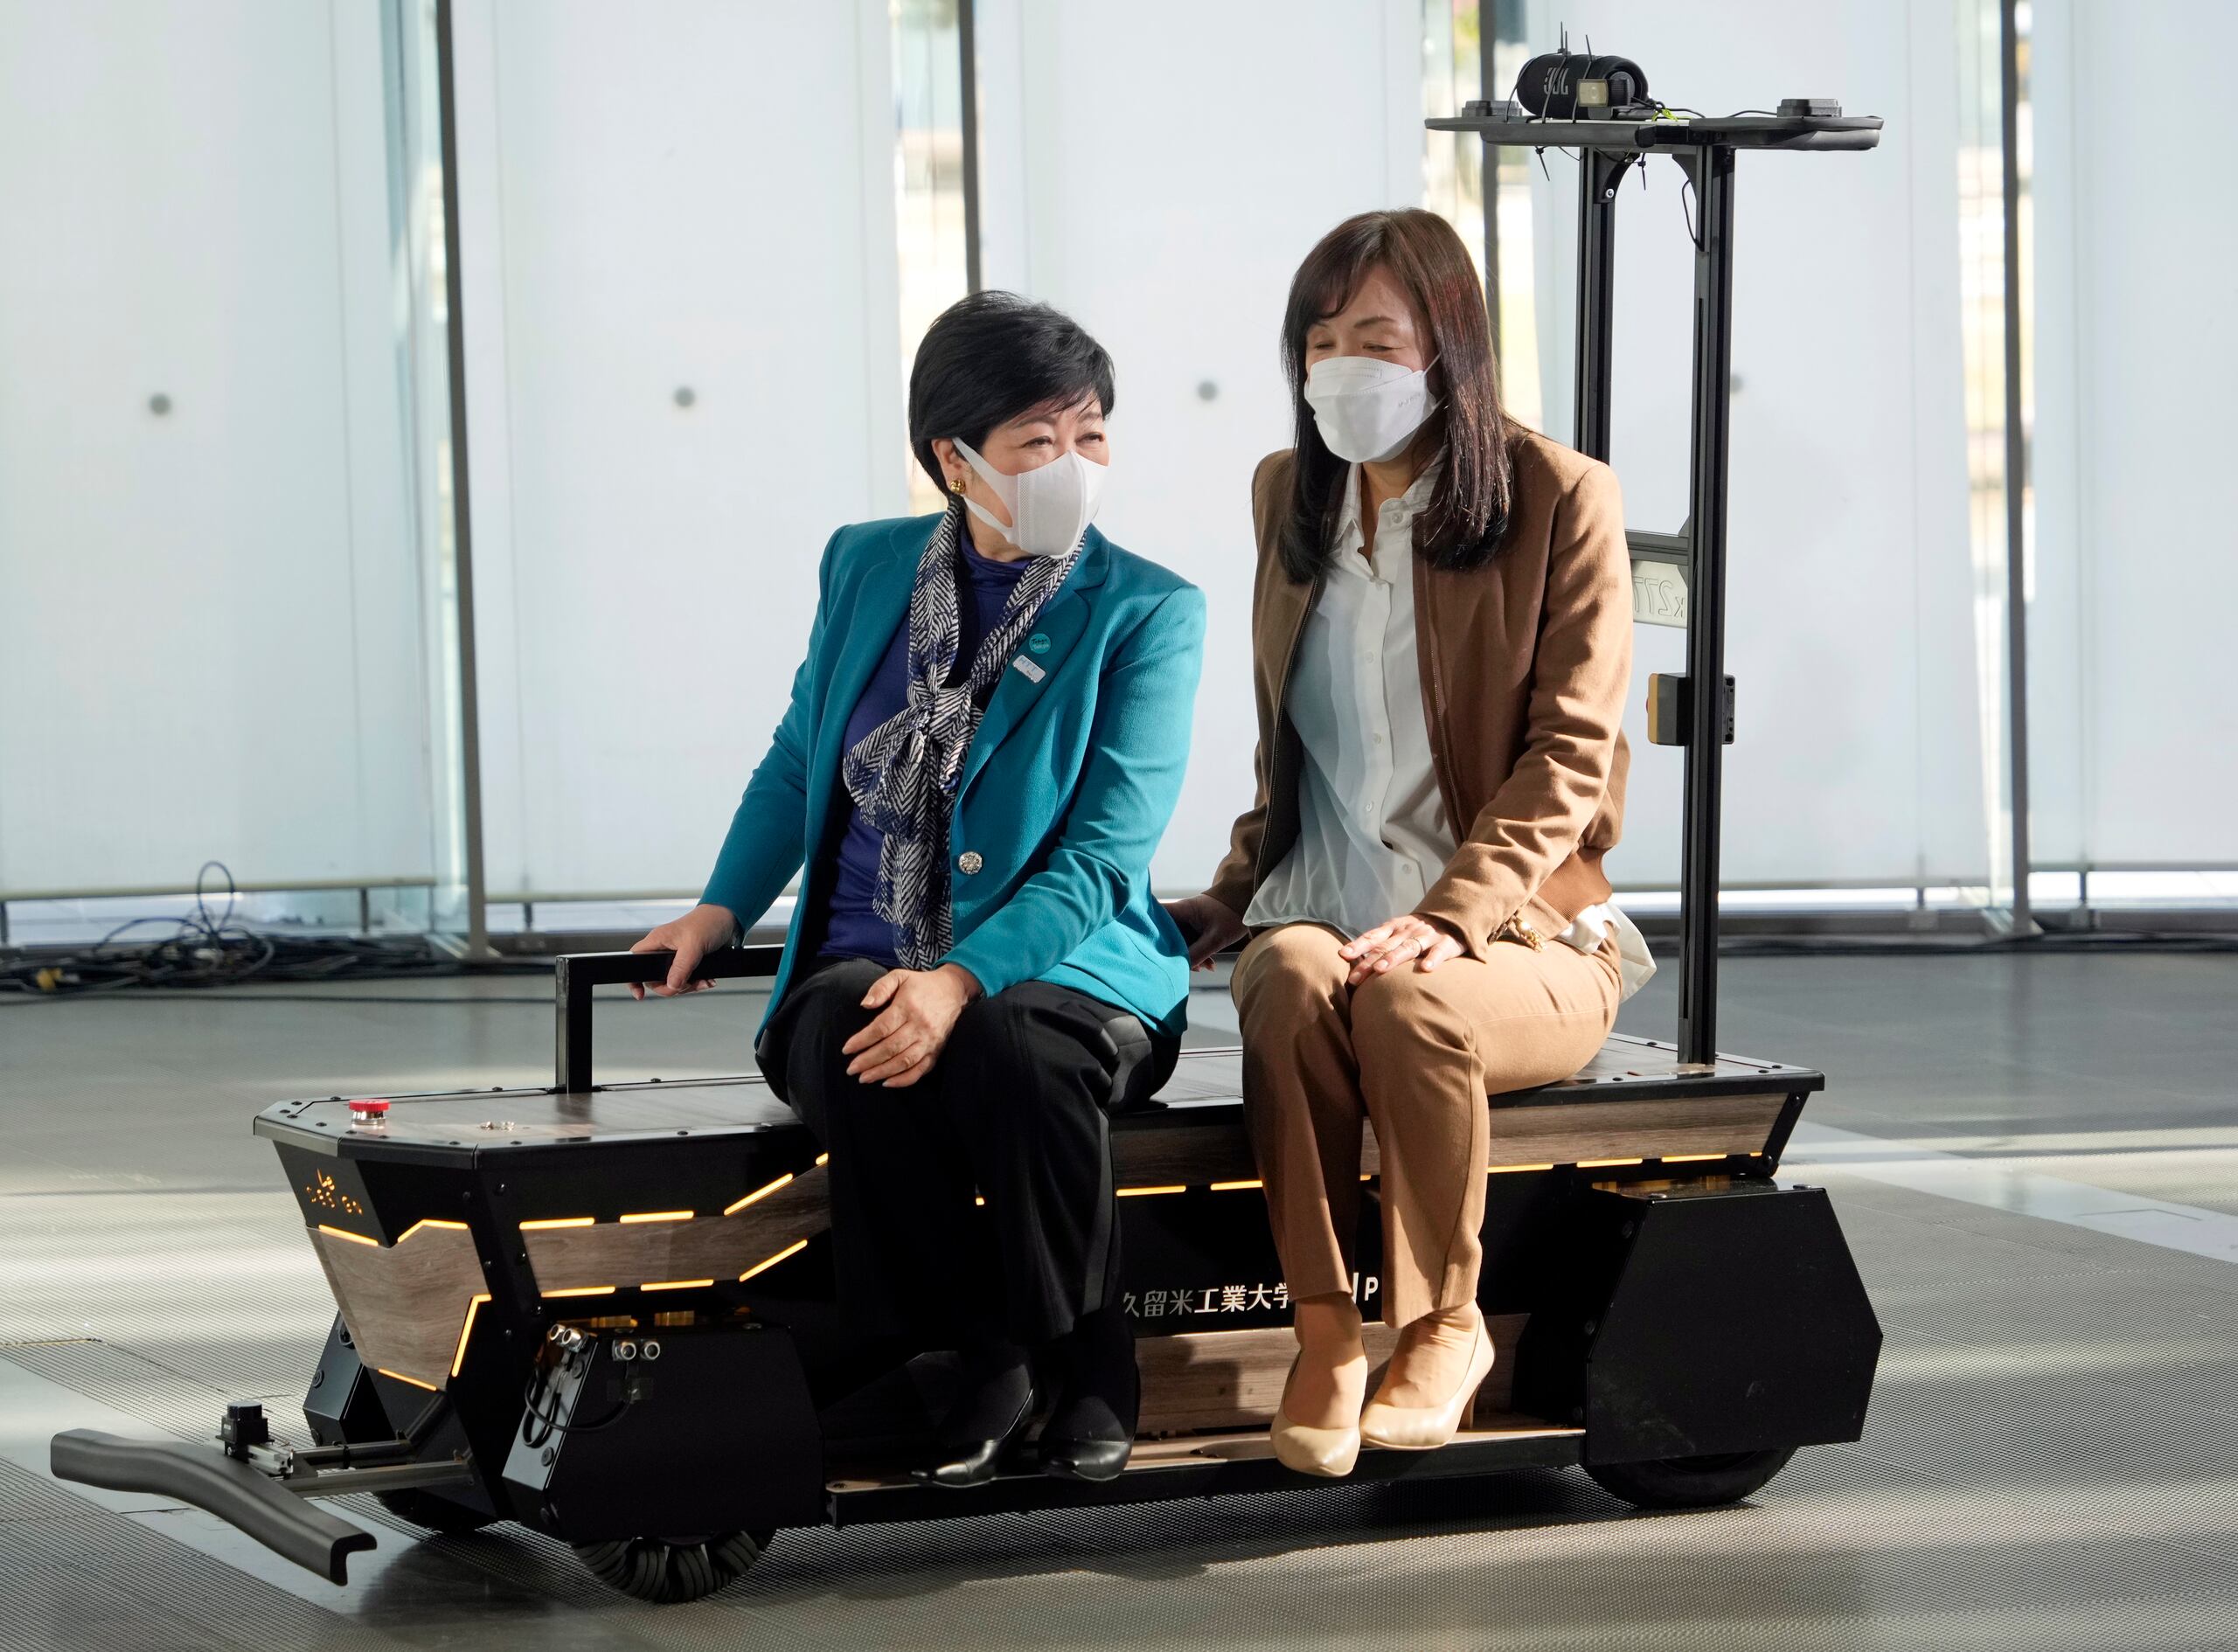 La idea de crear una maleta con IA vino de la propia experiencia de Chieko Asakawa, ya que quería lograr una movilidad independiente, especialmente en un entorno estresante. (EFE/EPA/FRANCK ROBICHON)